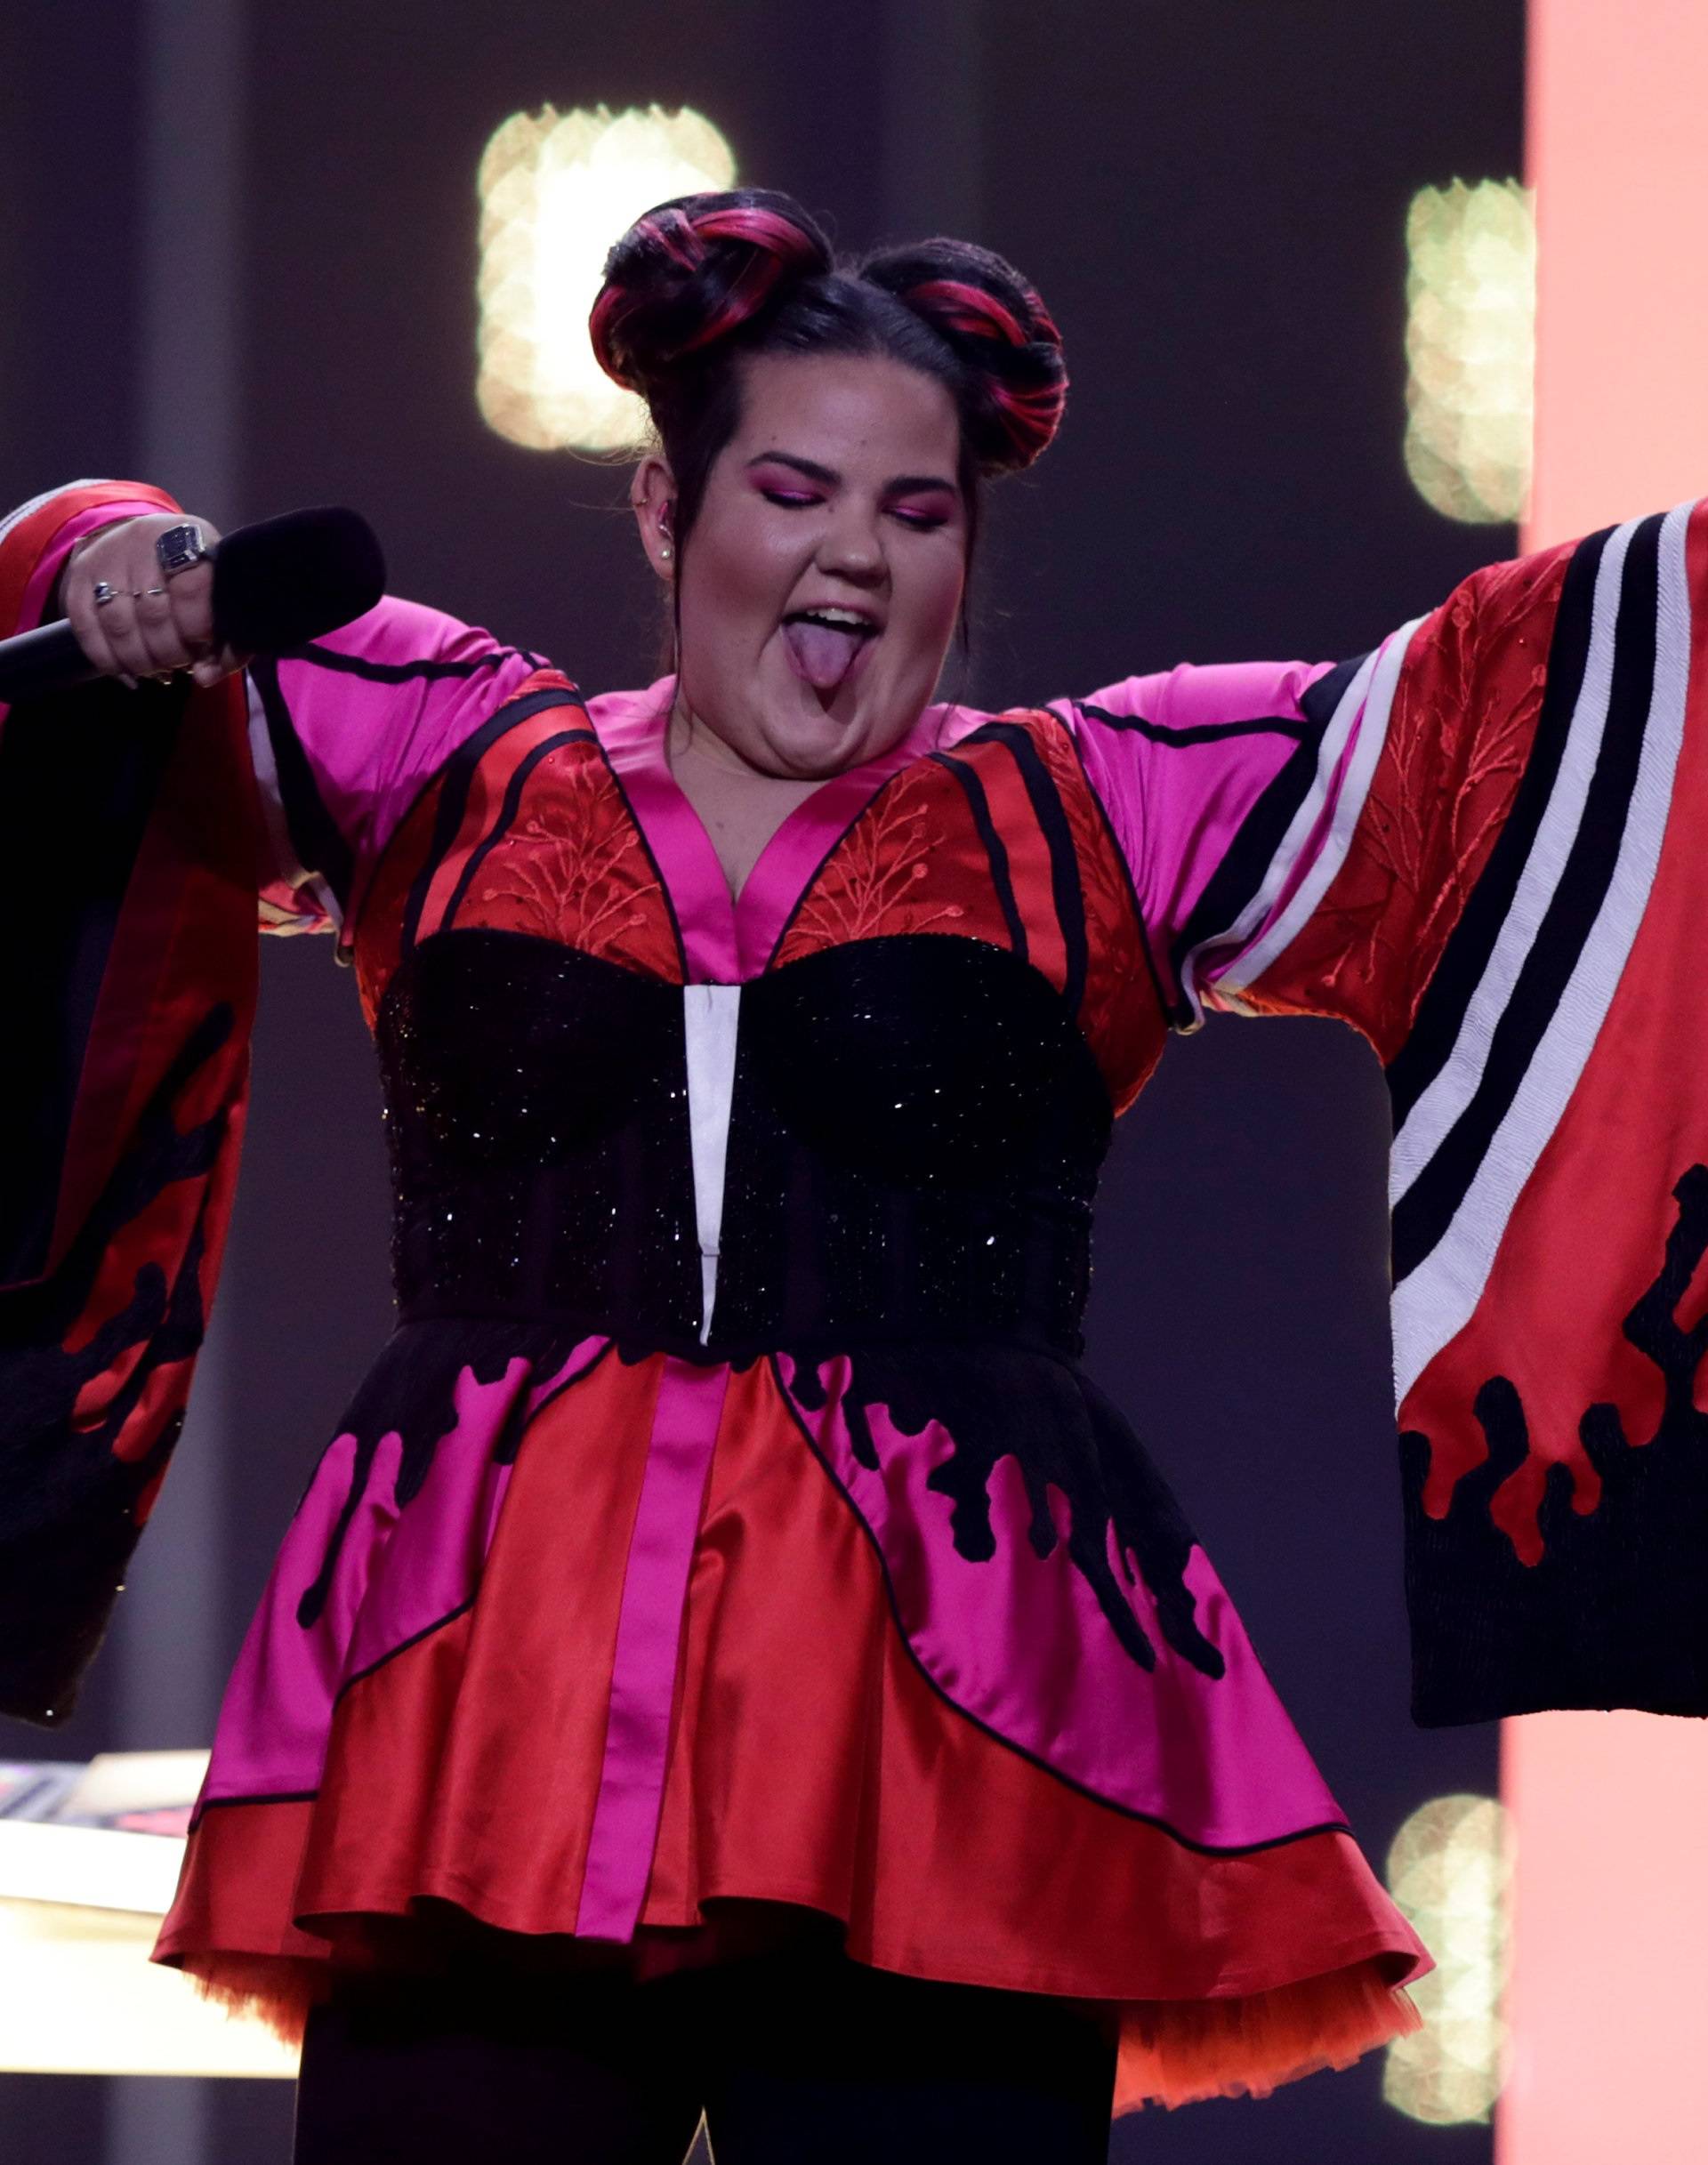 sraelâs Netta performs âToyâ during the dress rehearsal of Semi-Final 1 for Eurovision Song Contest 2018Â at the Altice Arena hall in Lisbon